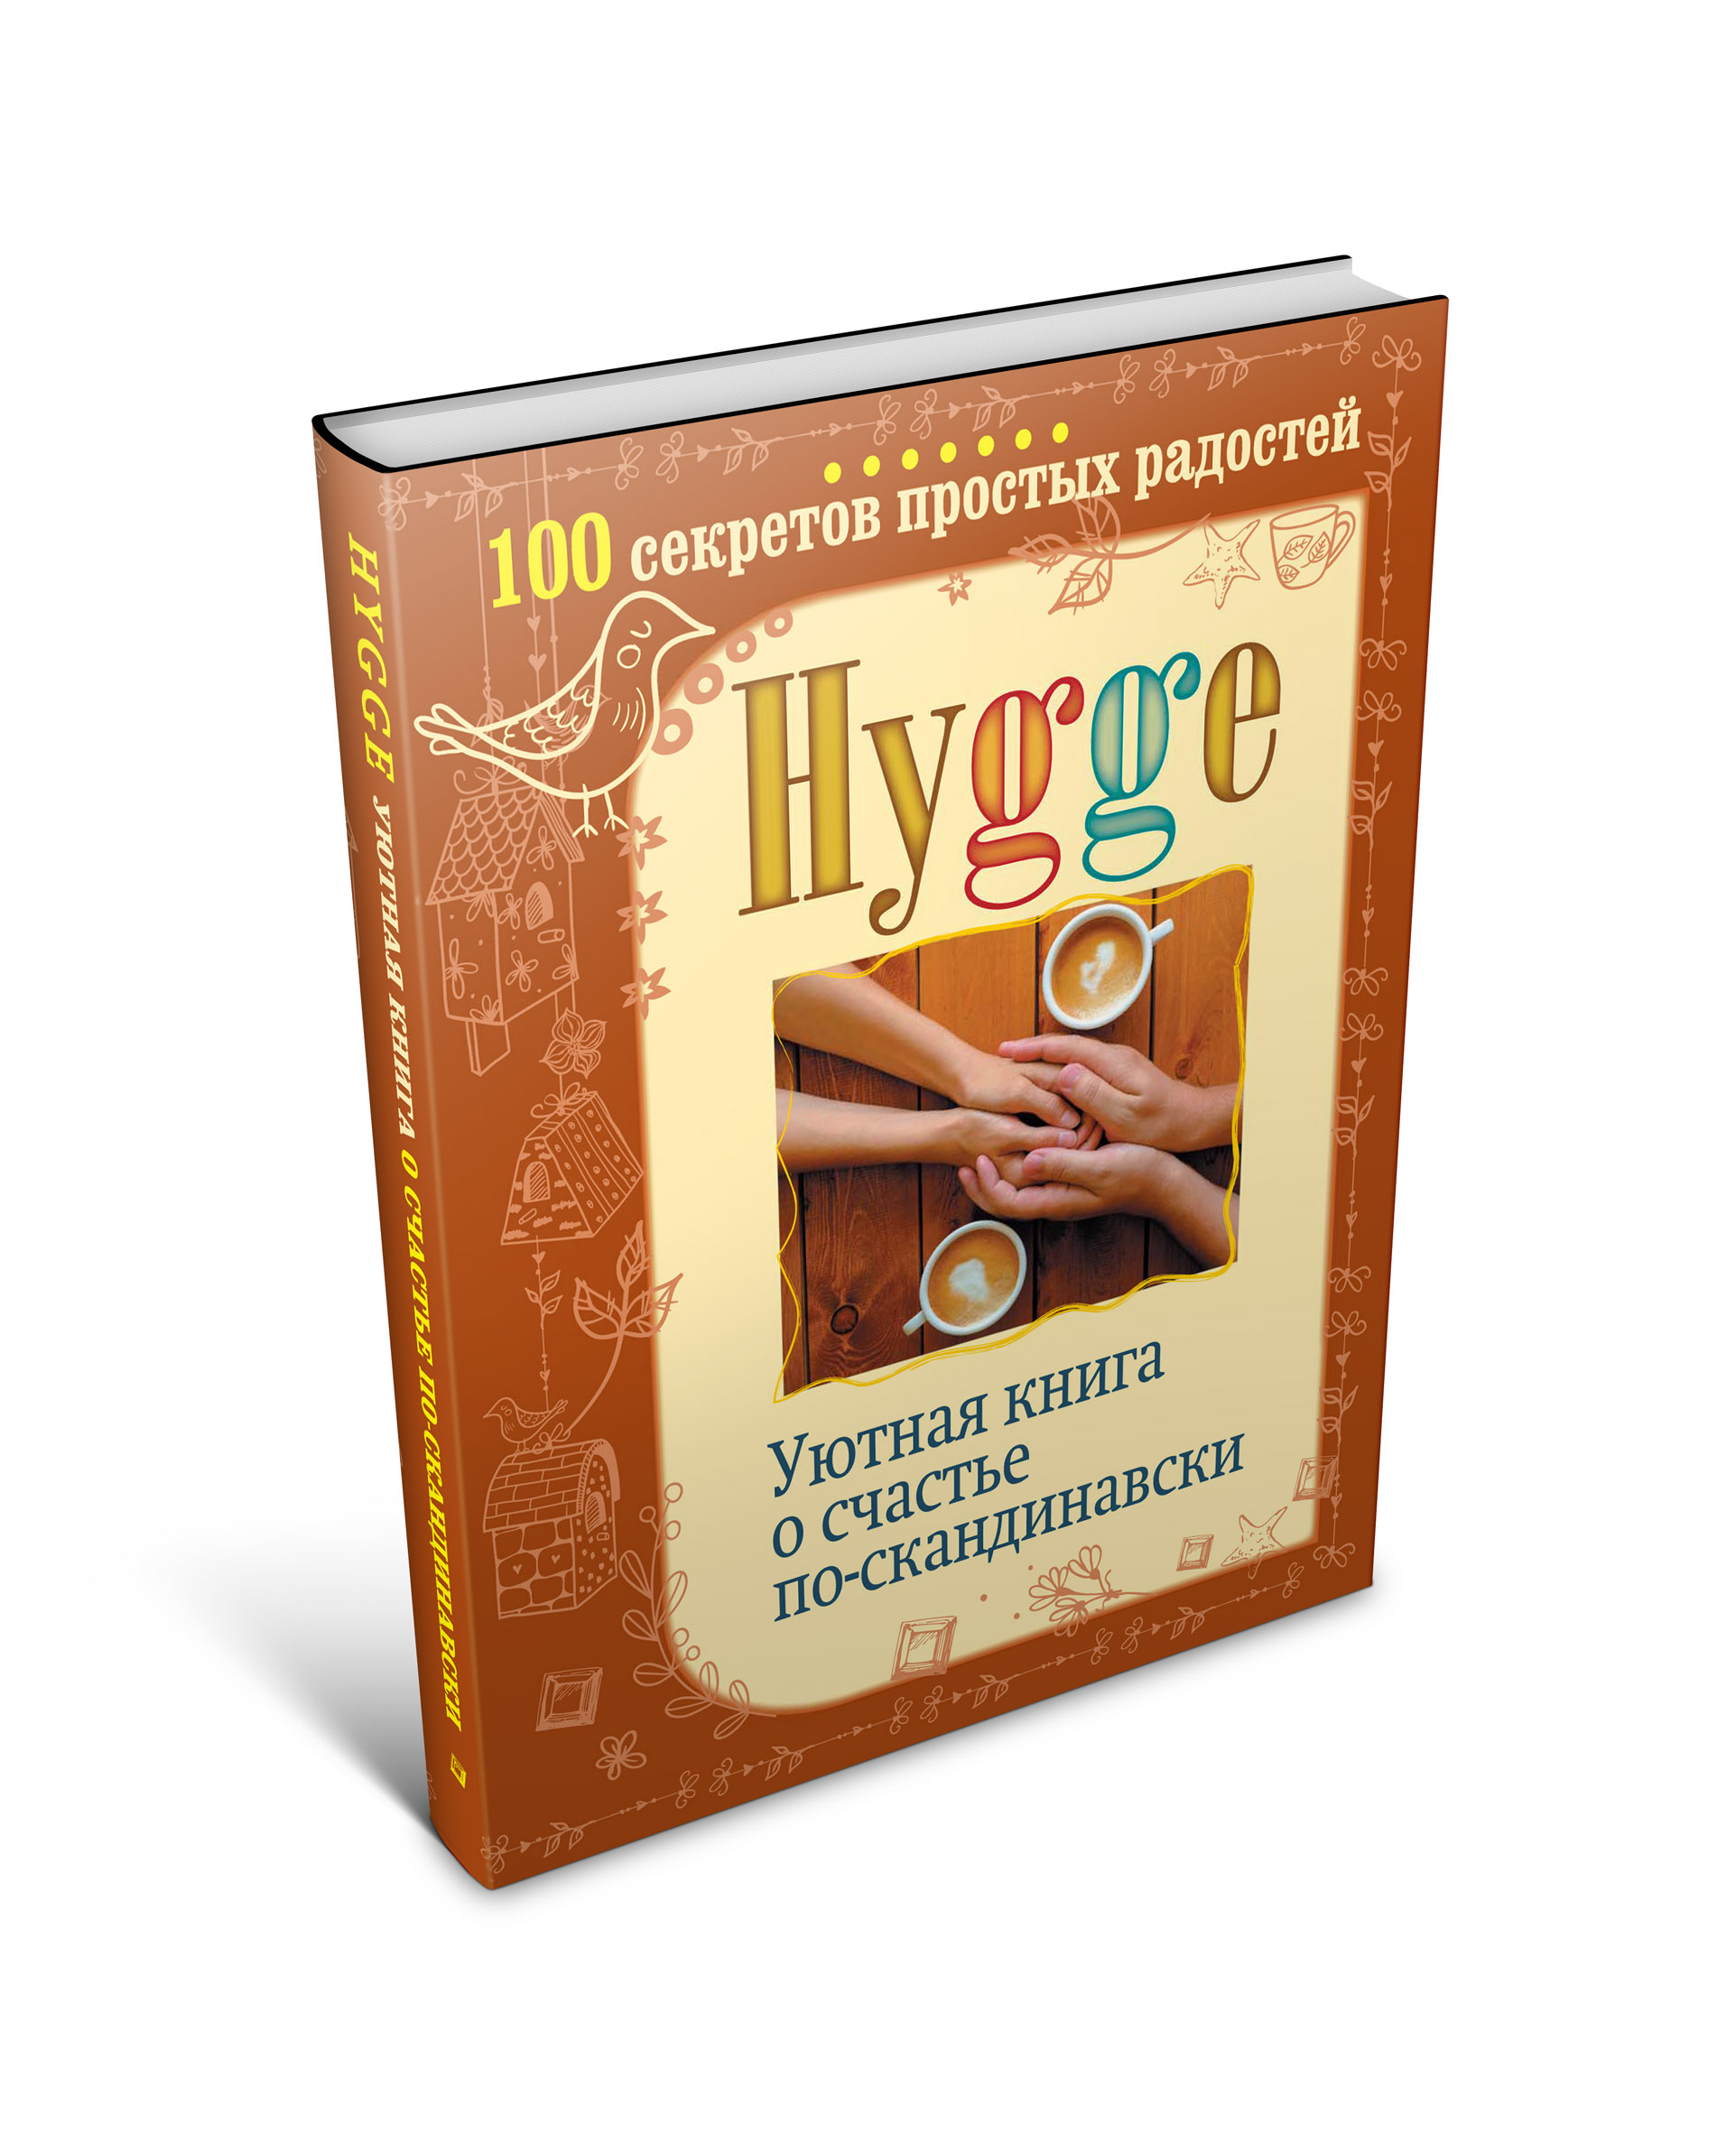 Hygge. Уютная книга о счастье по-скандинавски. 100 секретов простых радостей. Артур Майбах